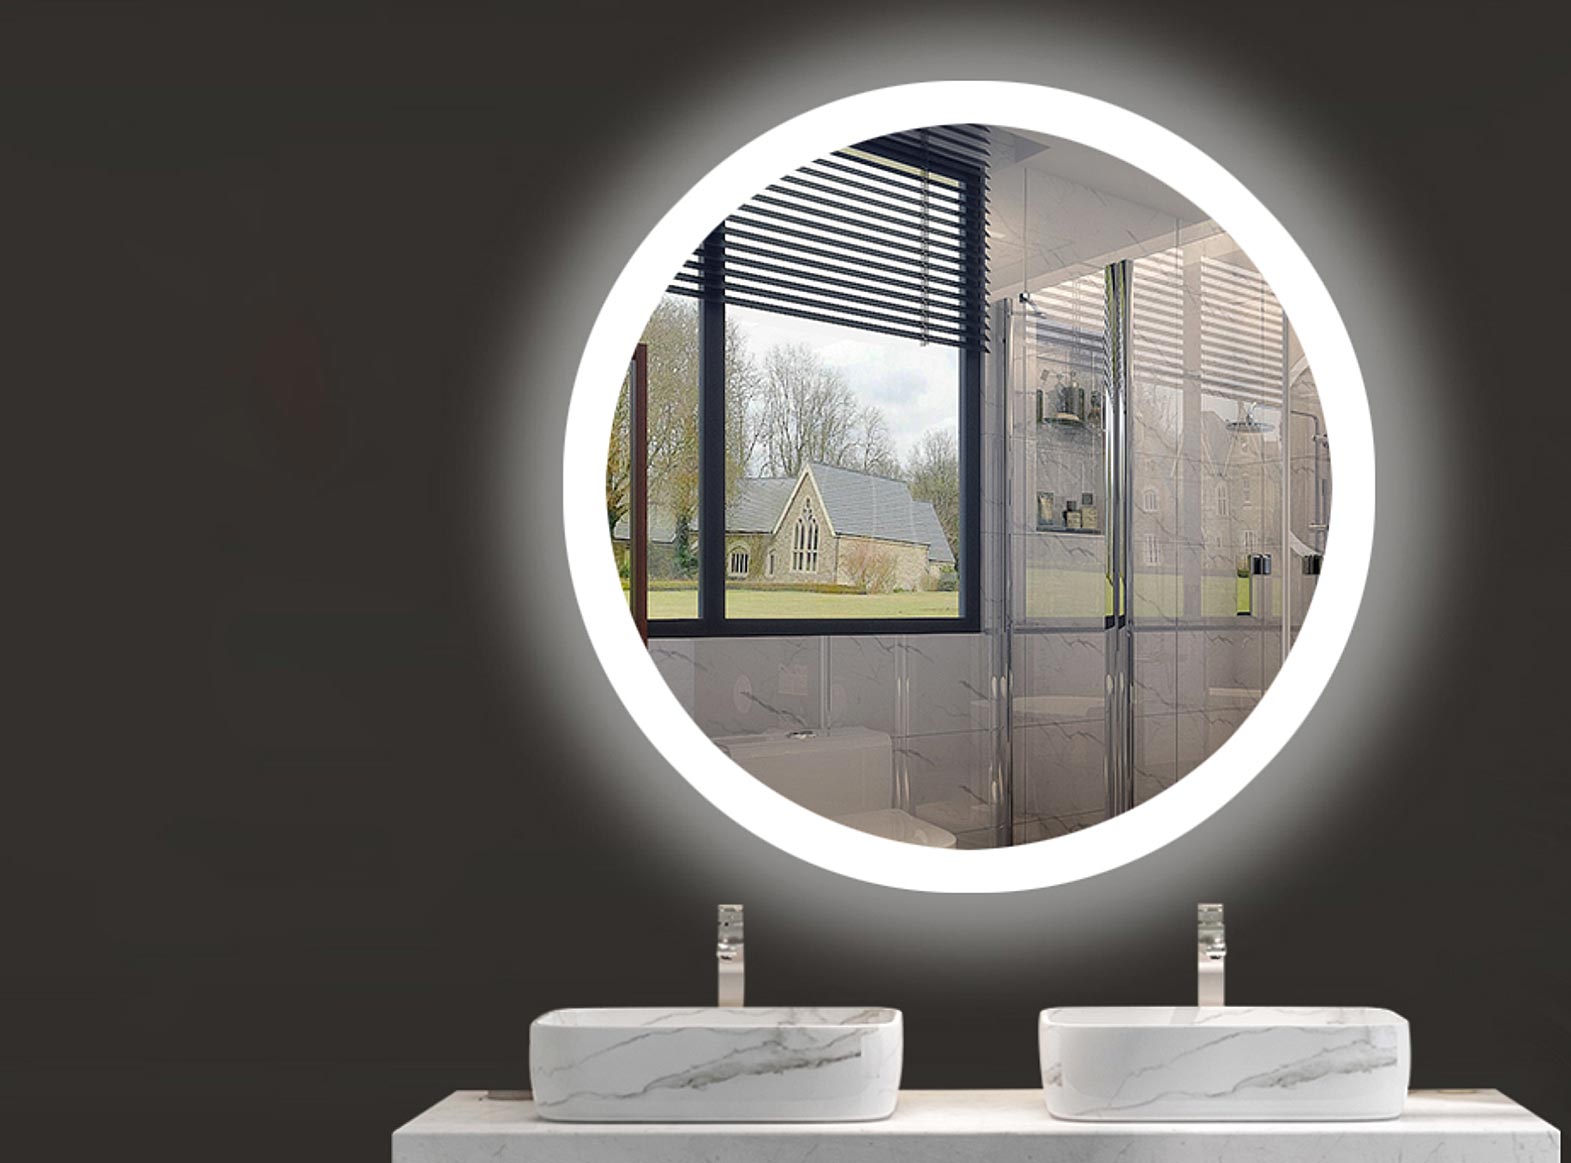 Với đèn trang trí LED soi gương phòng tắm hình tròn khung nhôm chao, bạn sẽ không chỉ có ánh sáng tốt mà còn tạo ra một không gian trang trọng và hiện đại. Với thiết kế độc đáo, ánh sáng tốt và chất lượng bền vững, chiếc đèn này là sự lựa chọn phù hợp để cải thiện không gian phòng tắm của bạn.